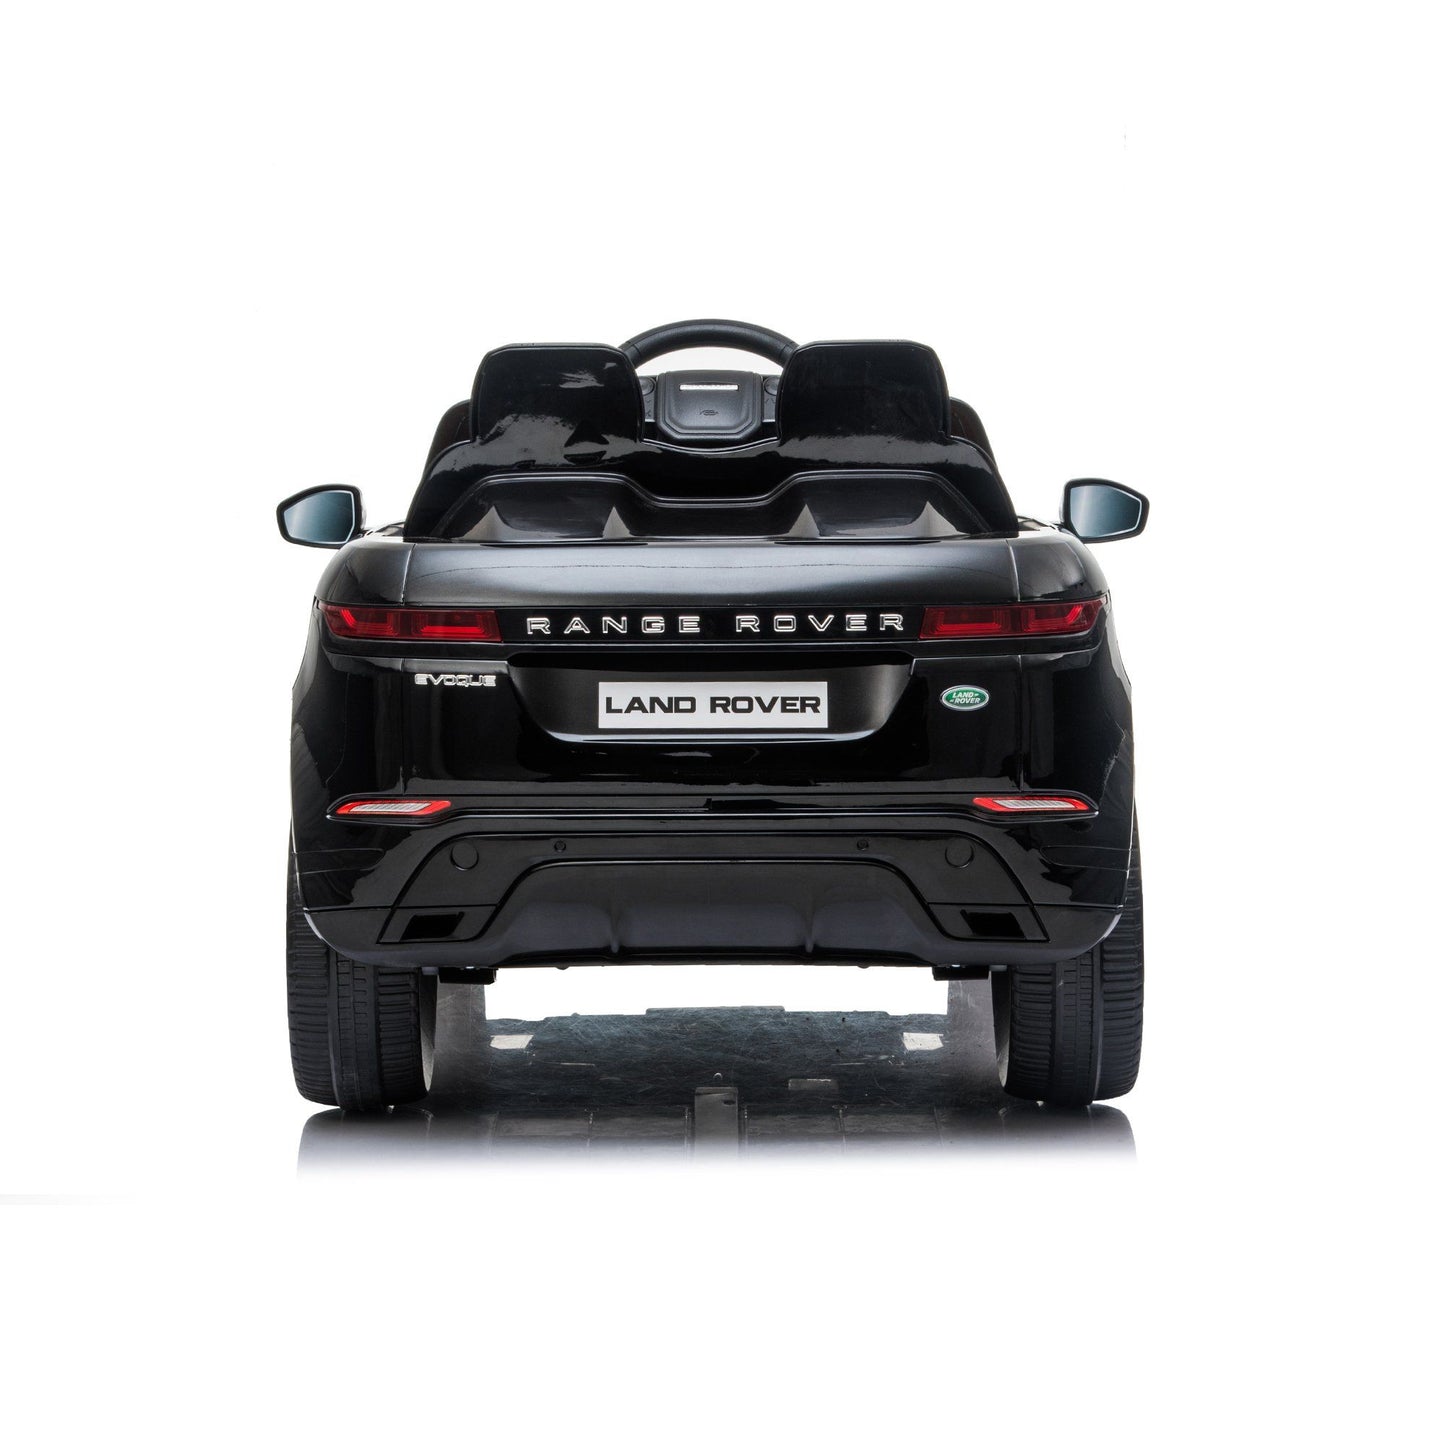 Freddo Toys | Range Rover Evoque Ride on Car